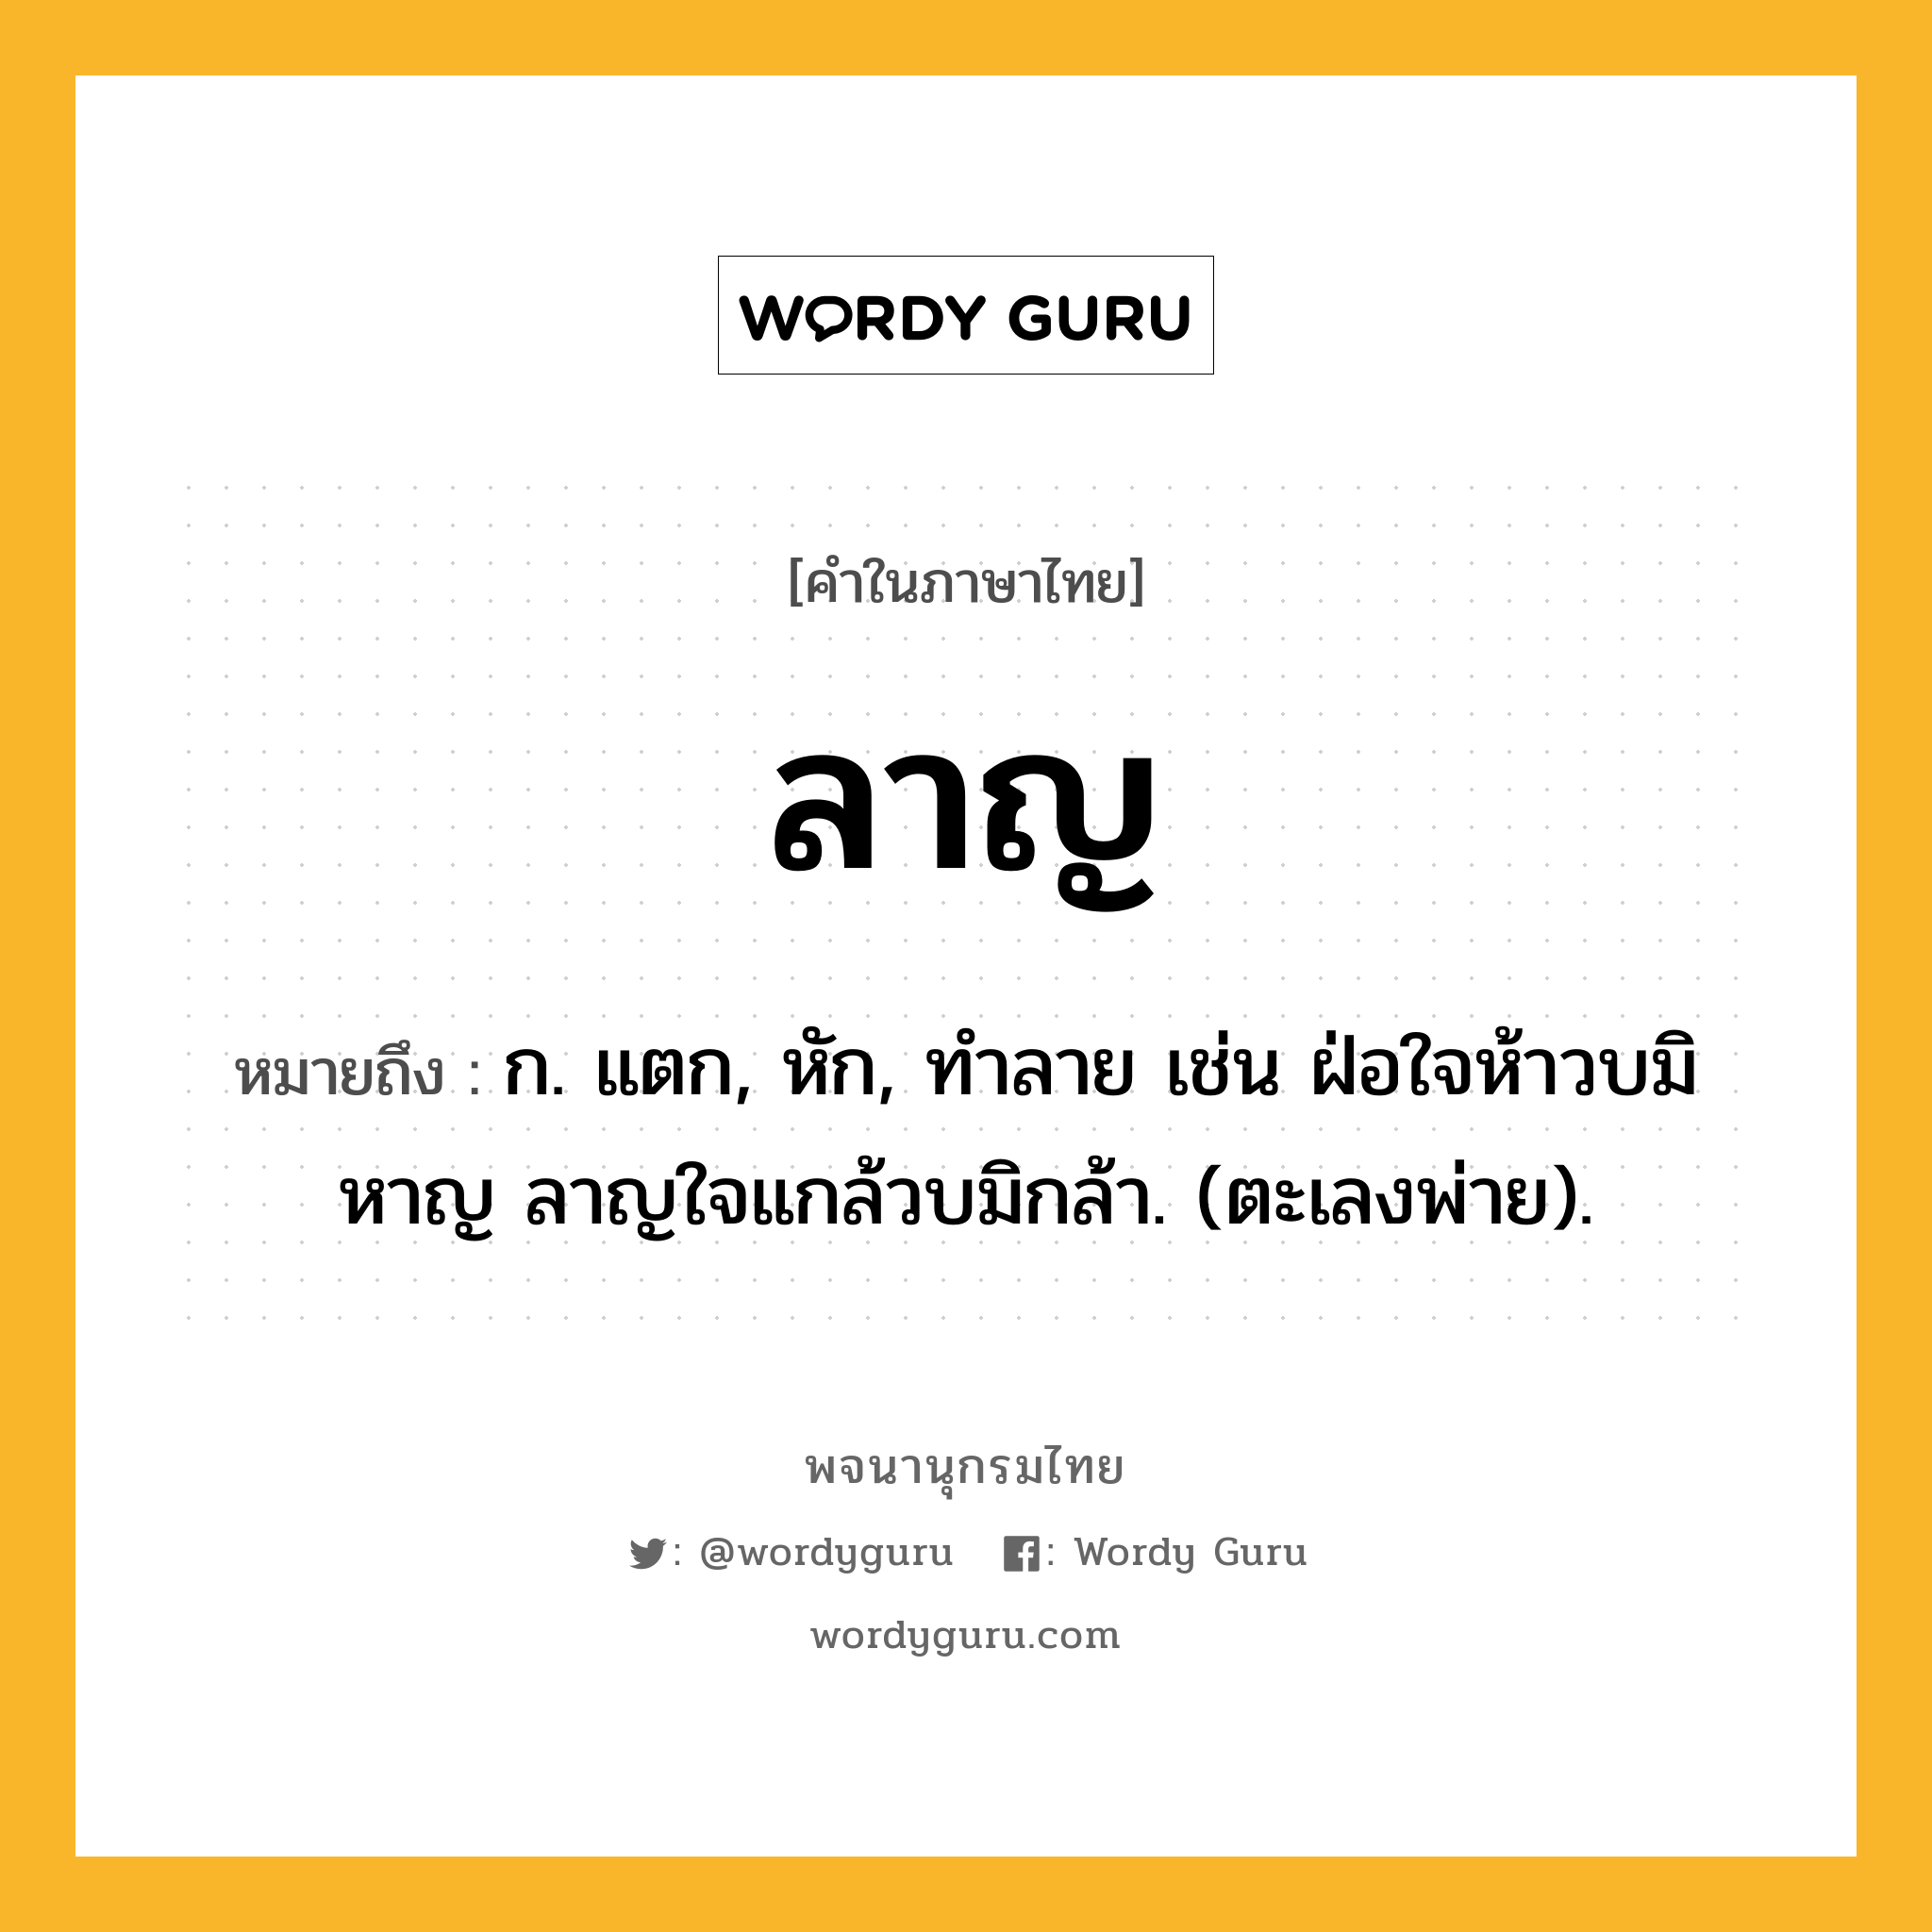 ลาญ ความหมาย หมายถึงอะไร?, คำในภาษาไทย ลาญ หมายถึง ก. แตก, หัก, ทําลาย เช่น ฝ่อใจห้าวบมิหาญ ลาญใจแกล้วบมิกล้า. (ตะเลงพ่าย).